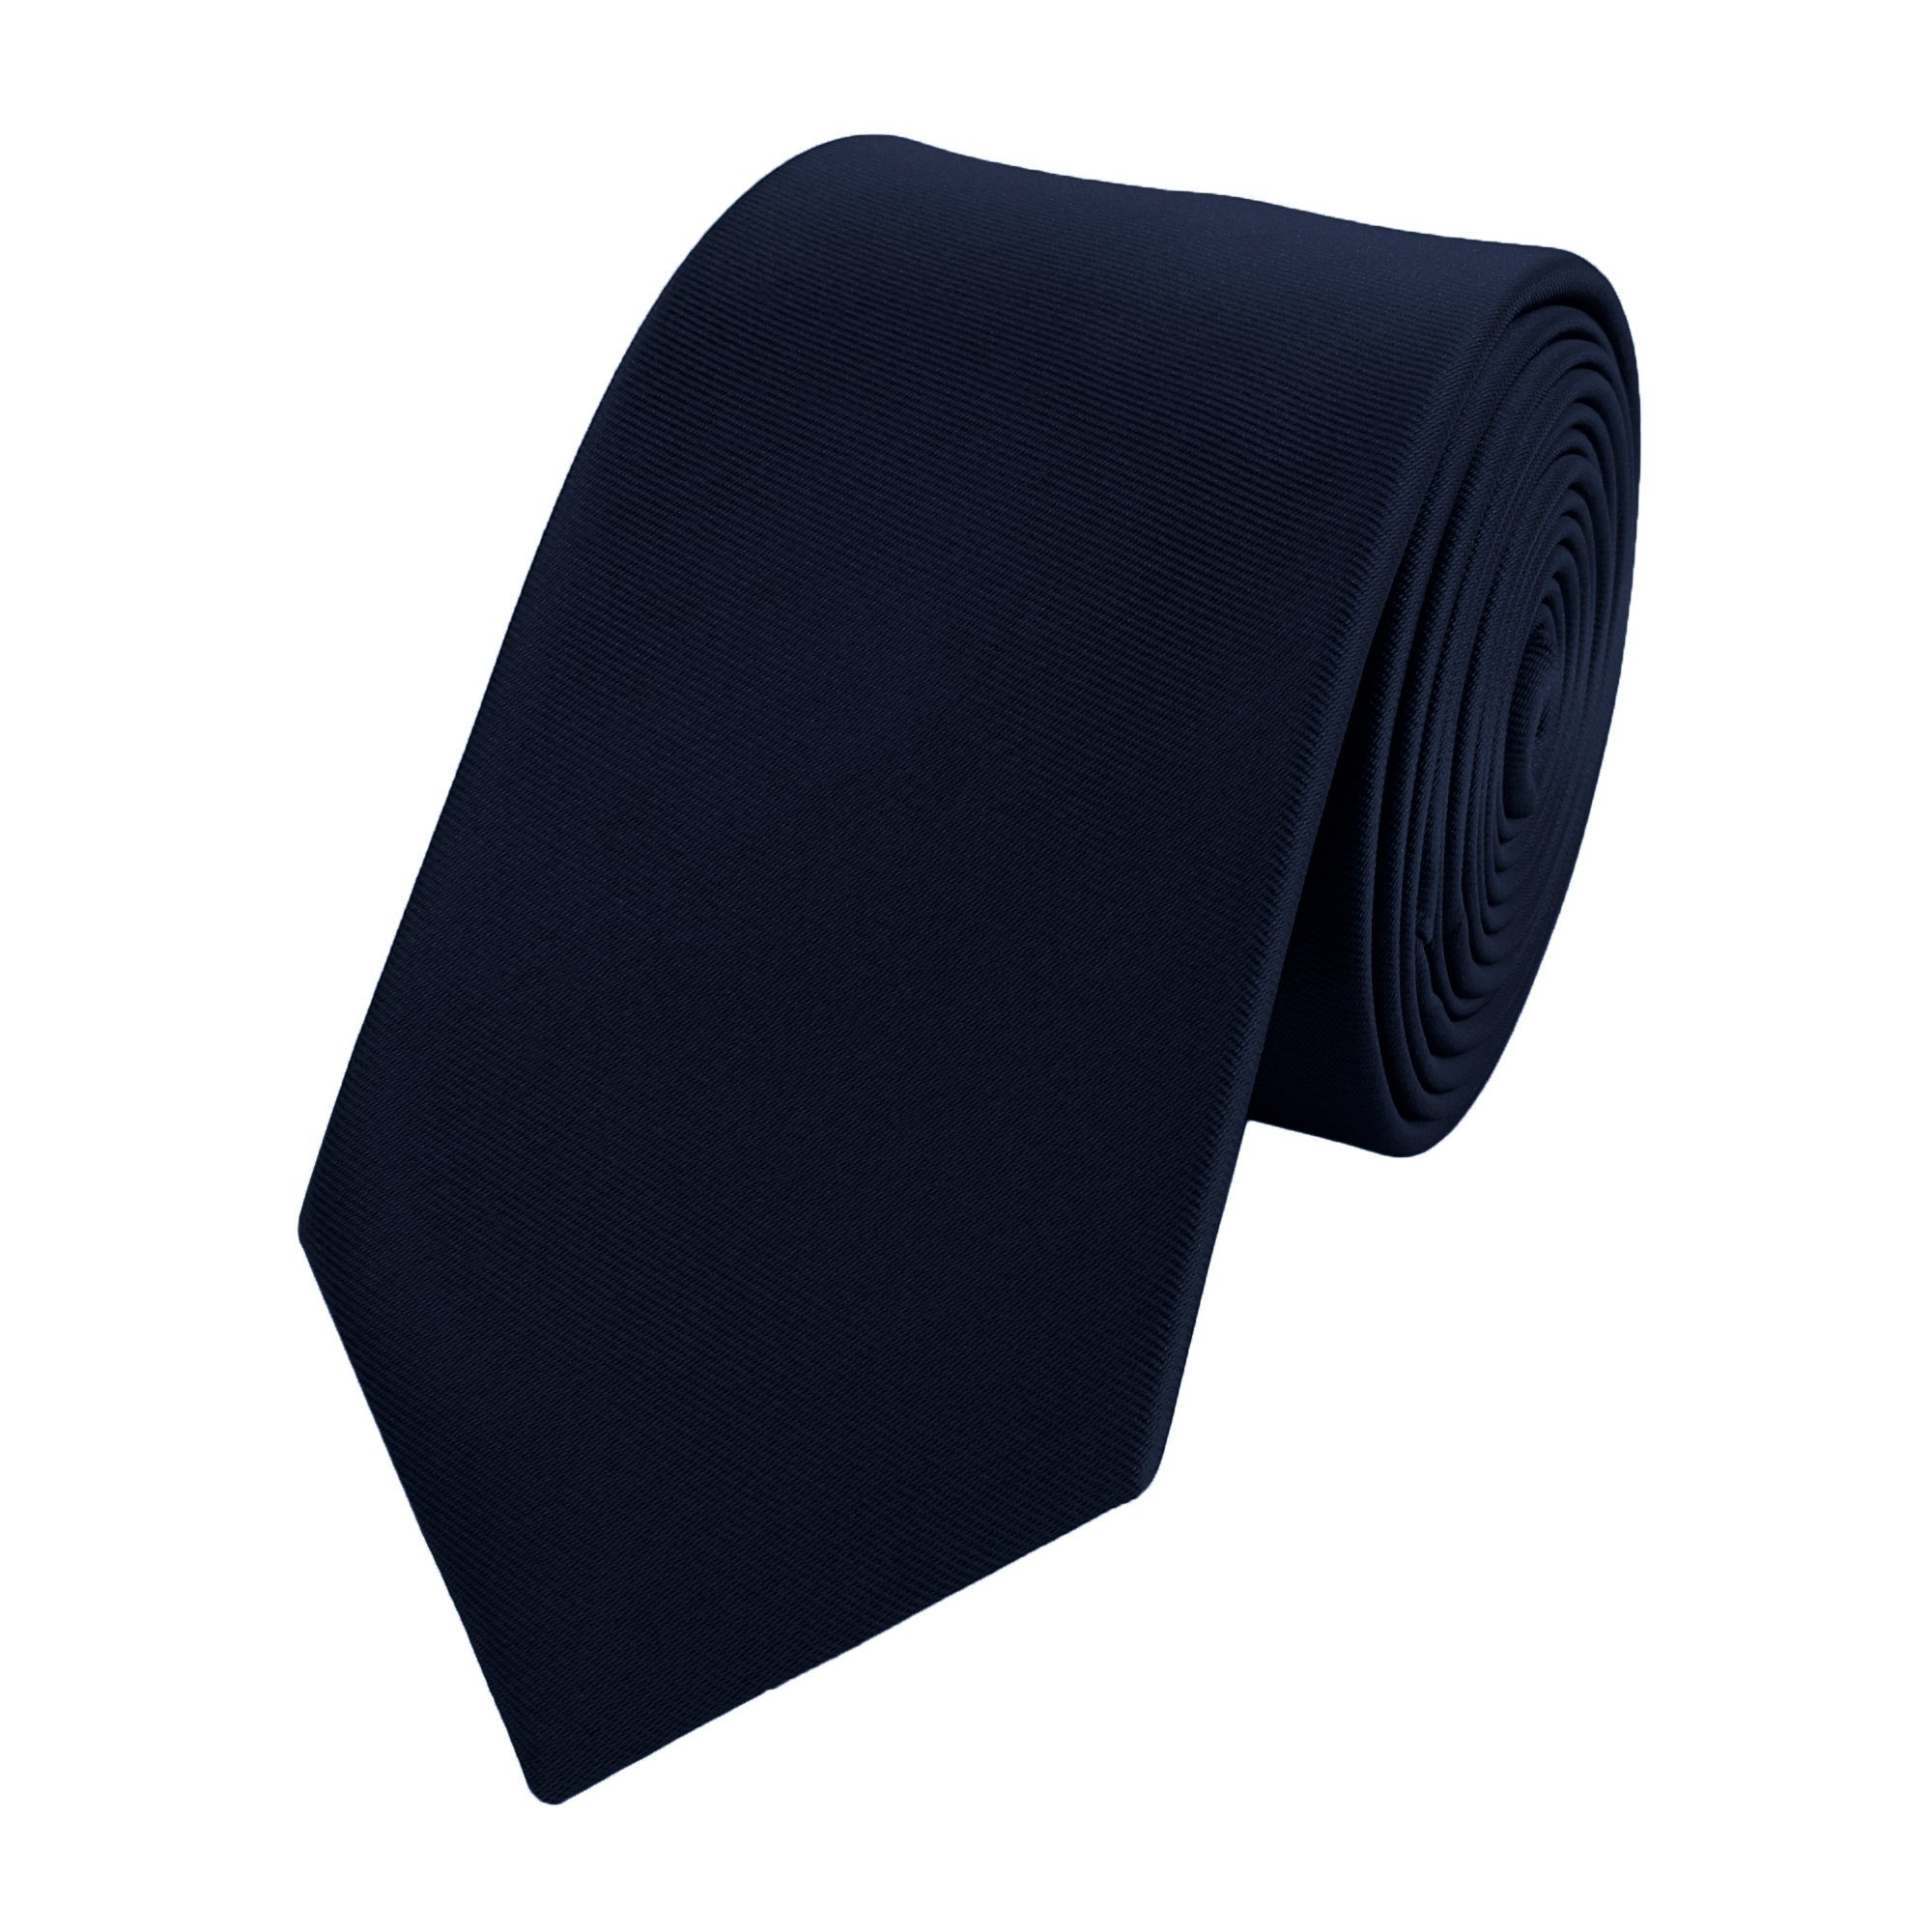 Fabio Farini Krawatte Herren Krawatte Blautöne - verschiedene Blaue Männer Schlips in 6cm (ohne Box, Unifarben) Schmal (6cm), Schwarzblau Uni Einfarbig - Black Blue